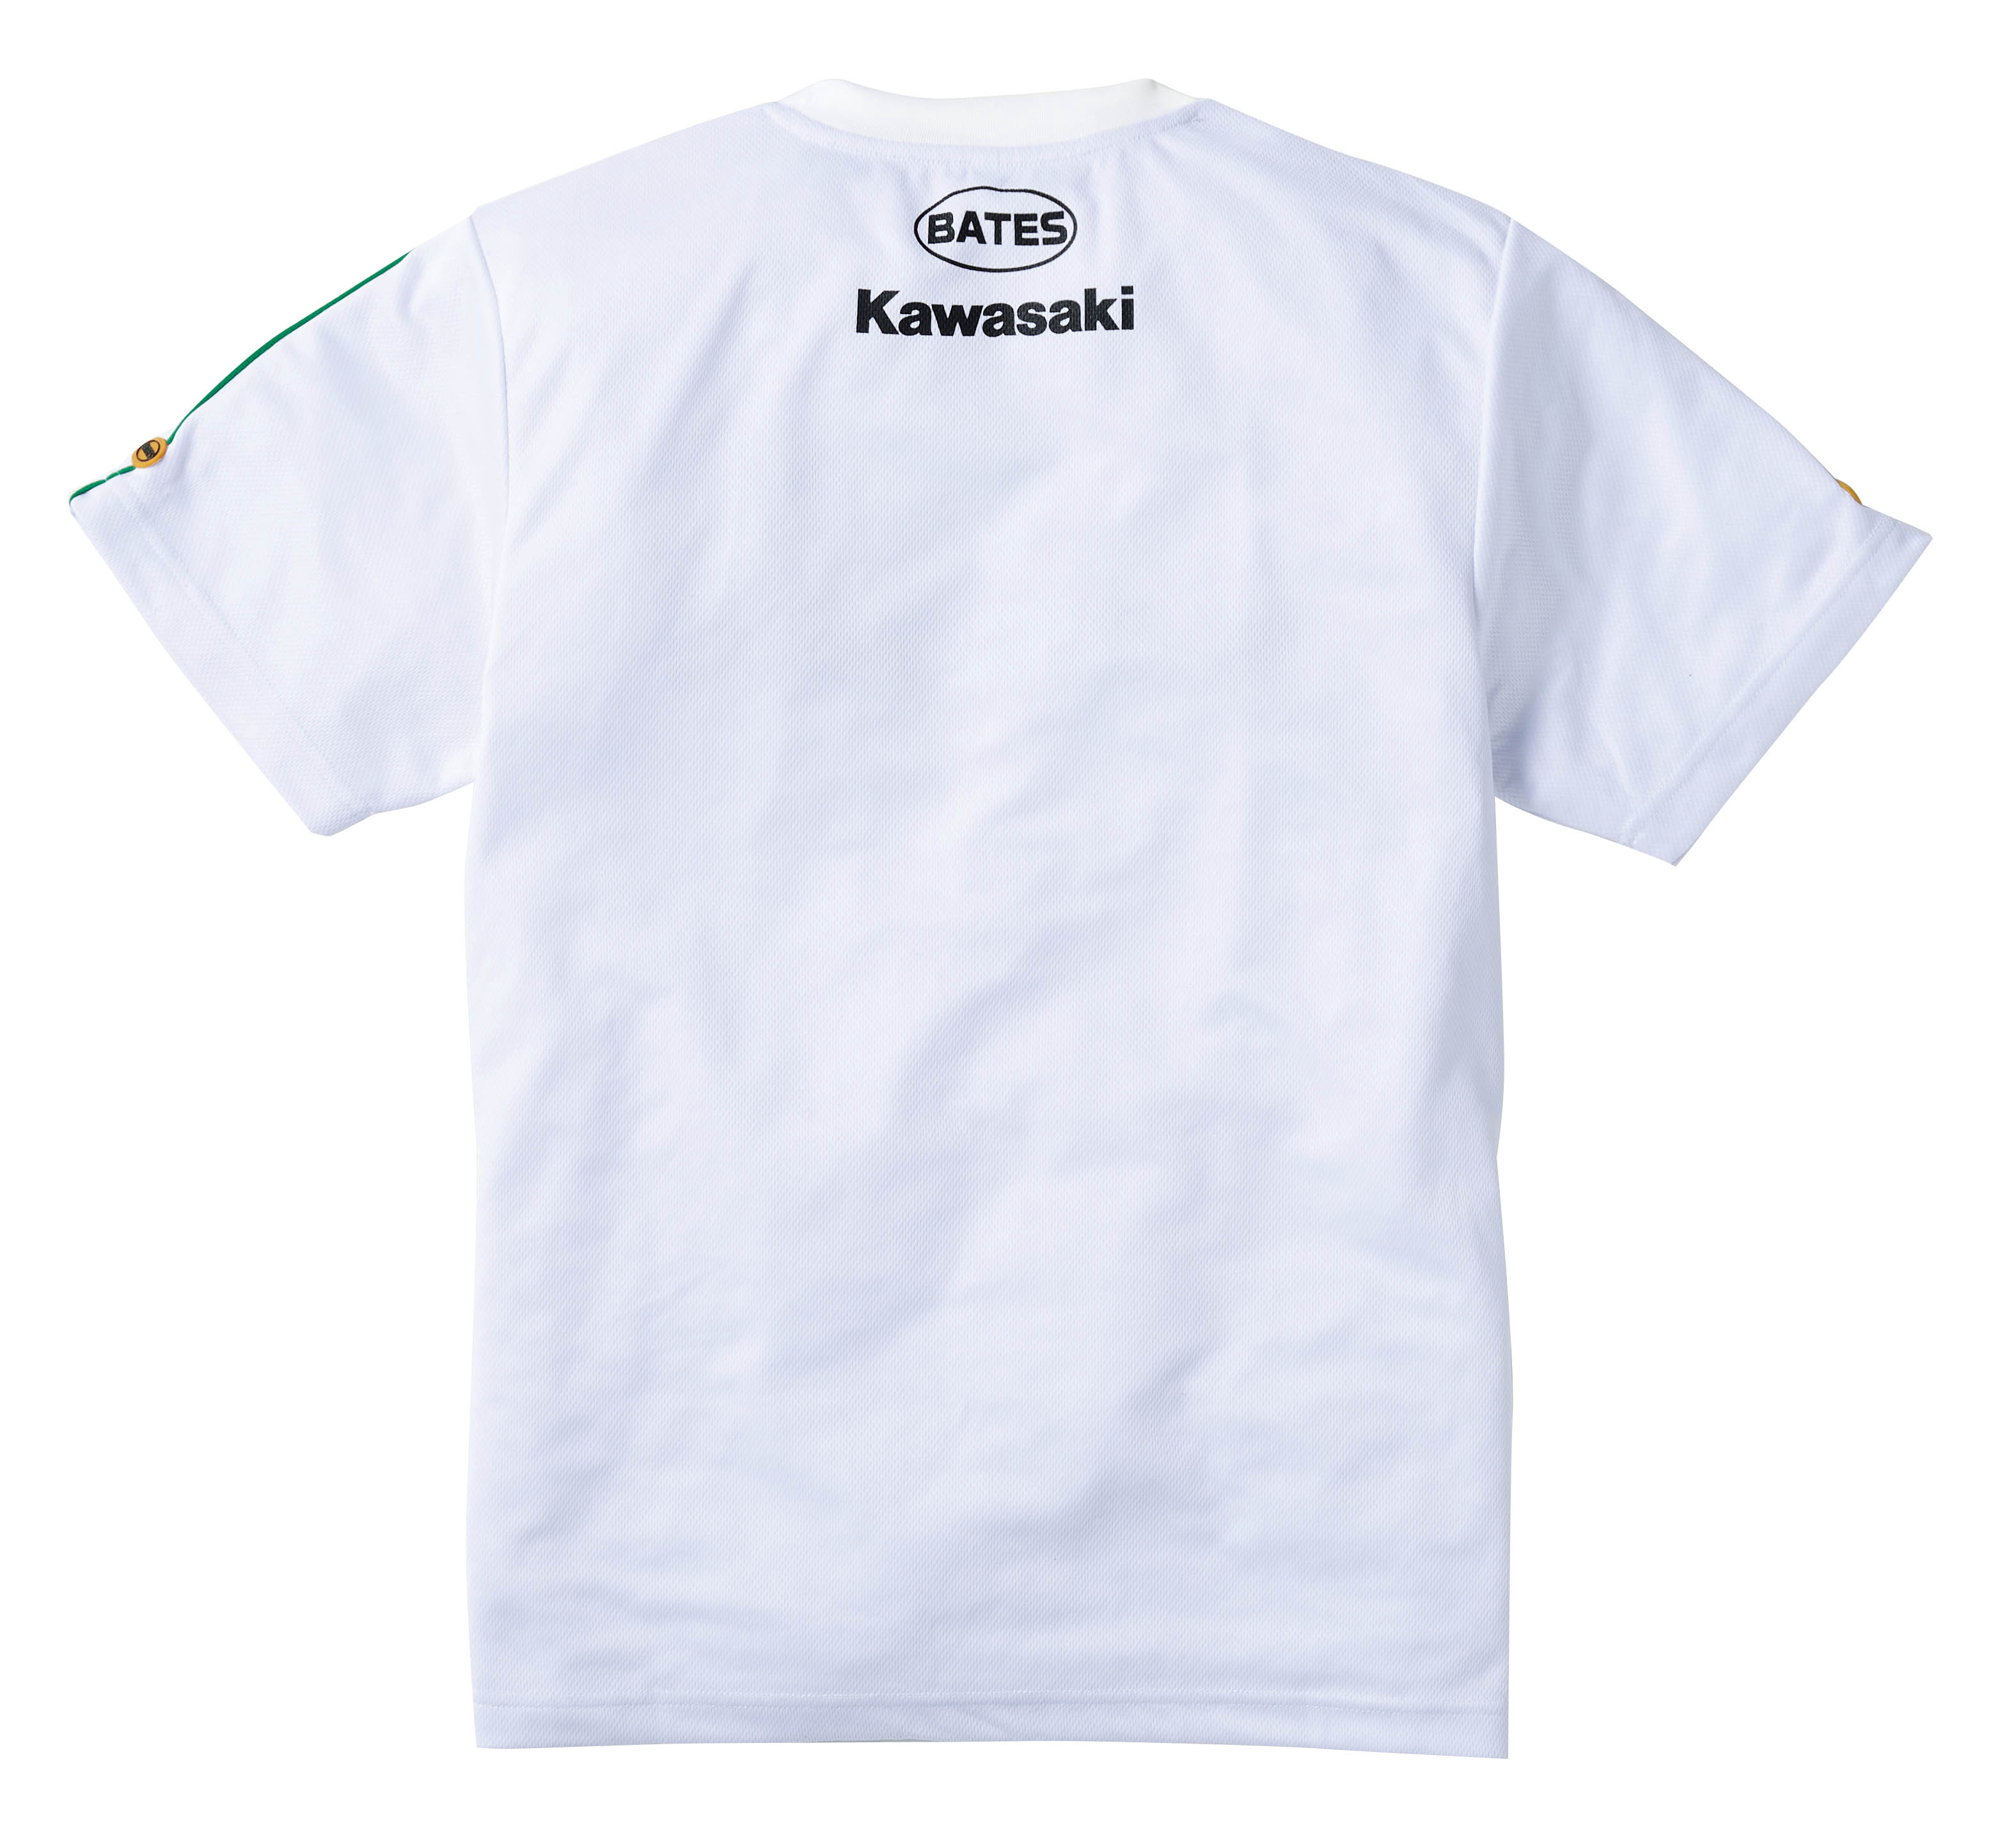 特上美品 カワサキ NO.1テクノロジーTシャツ J8901-1607 サイズM ...